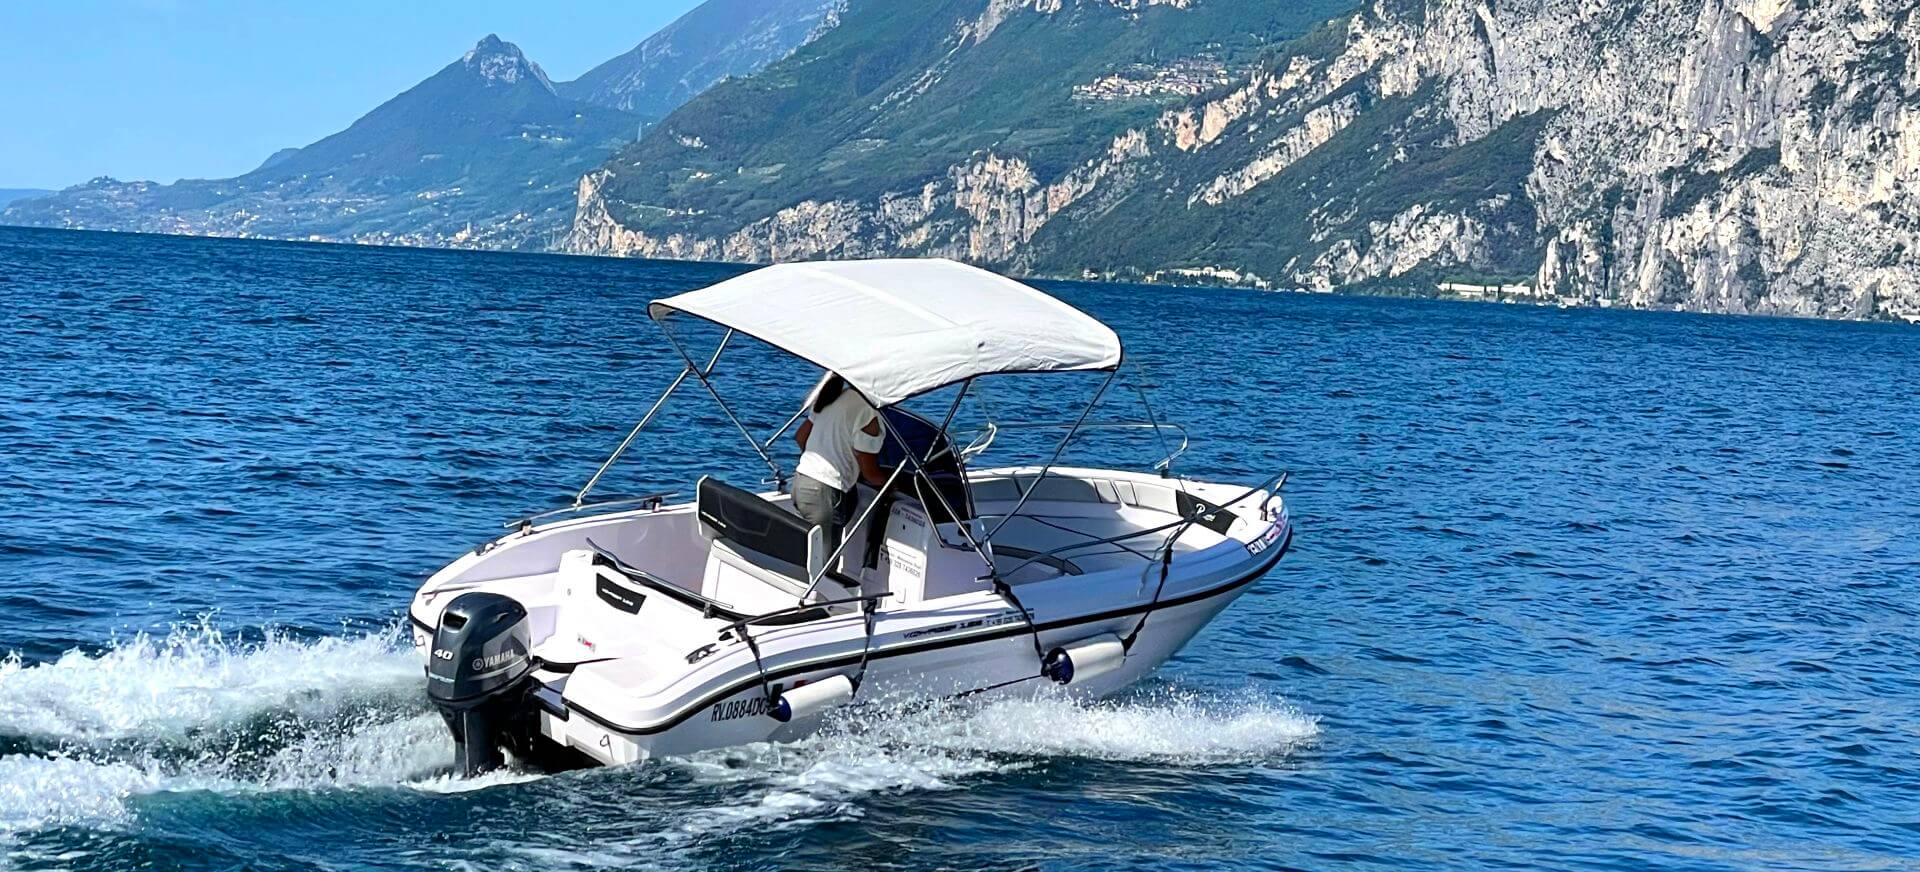 Motoscafi a noleggio sul lago di Garda